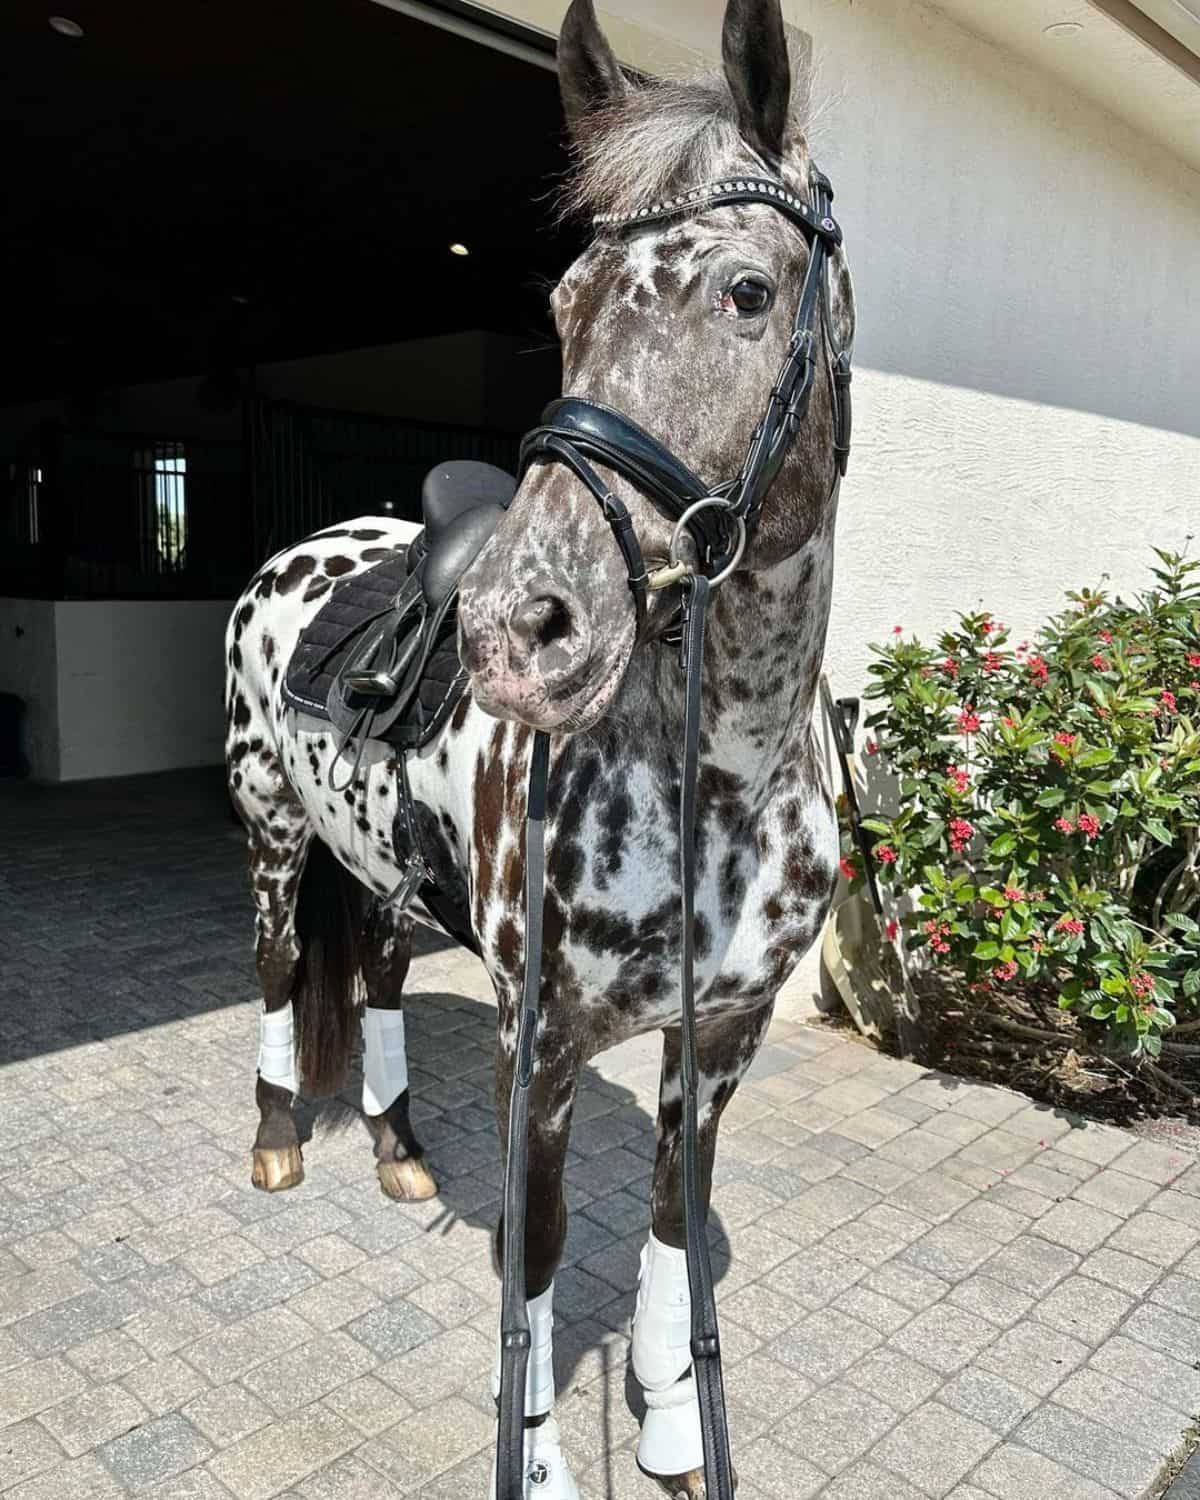 An adorable speckled Appaloosa horse near a barn.